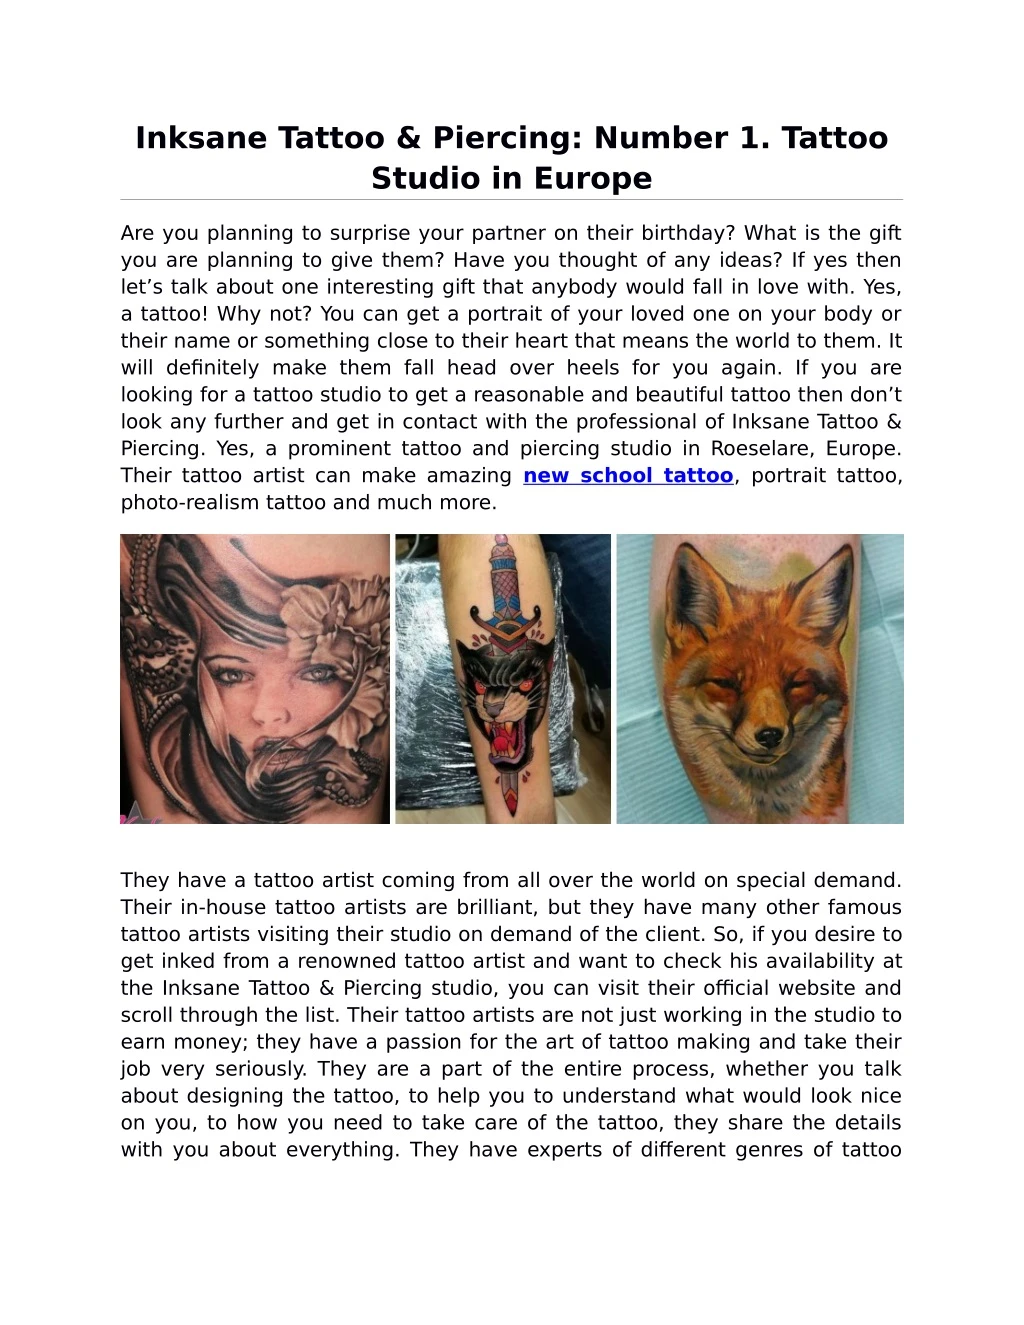 inksane tattoo piercing number 1 tattoo studio